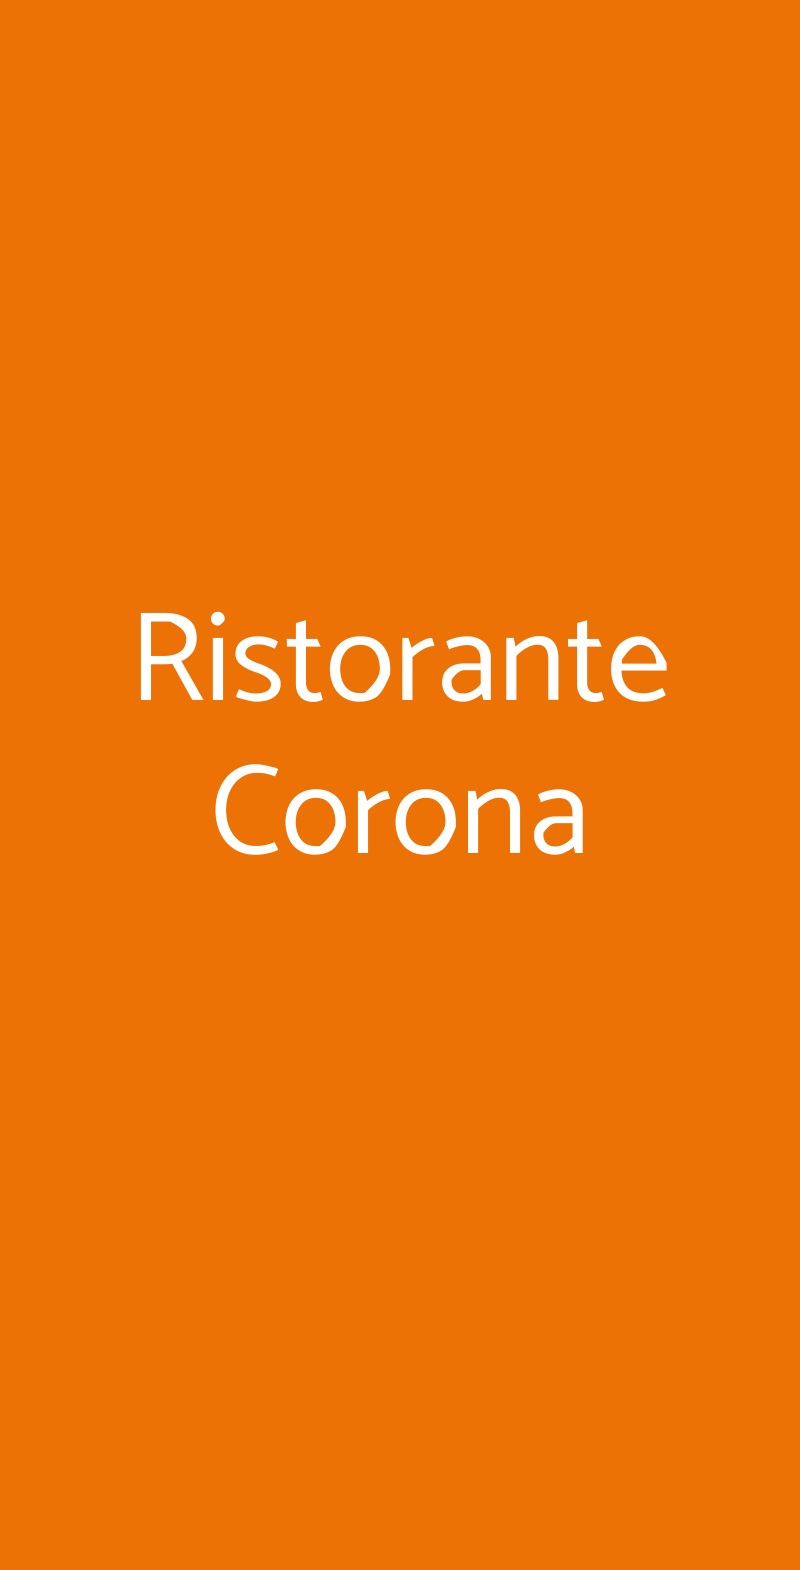 Ristorante Corona San Sebastiano Curone menù 1 pagina